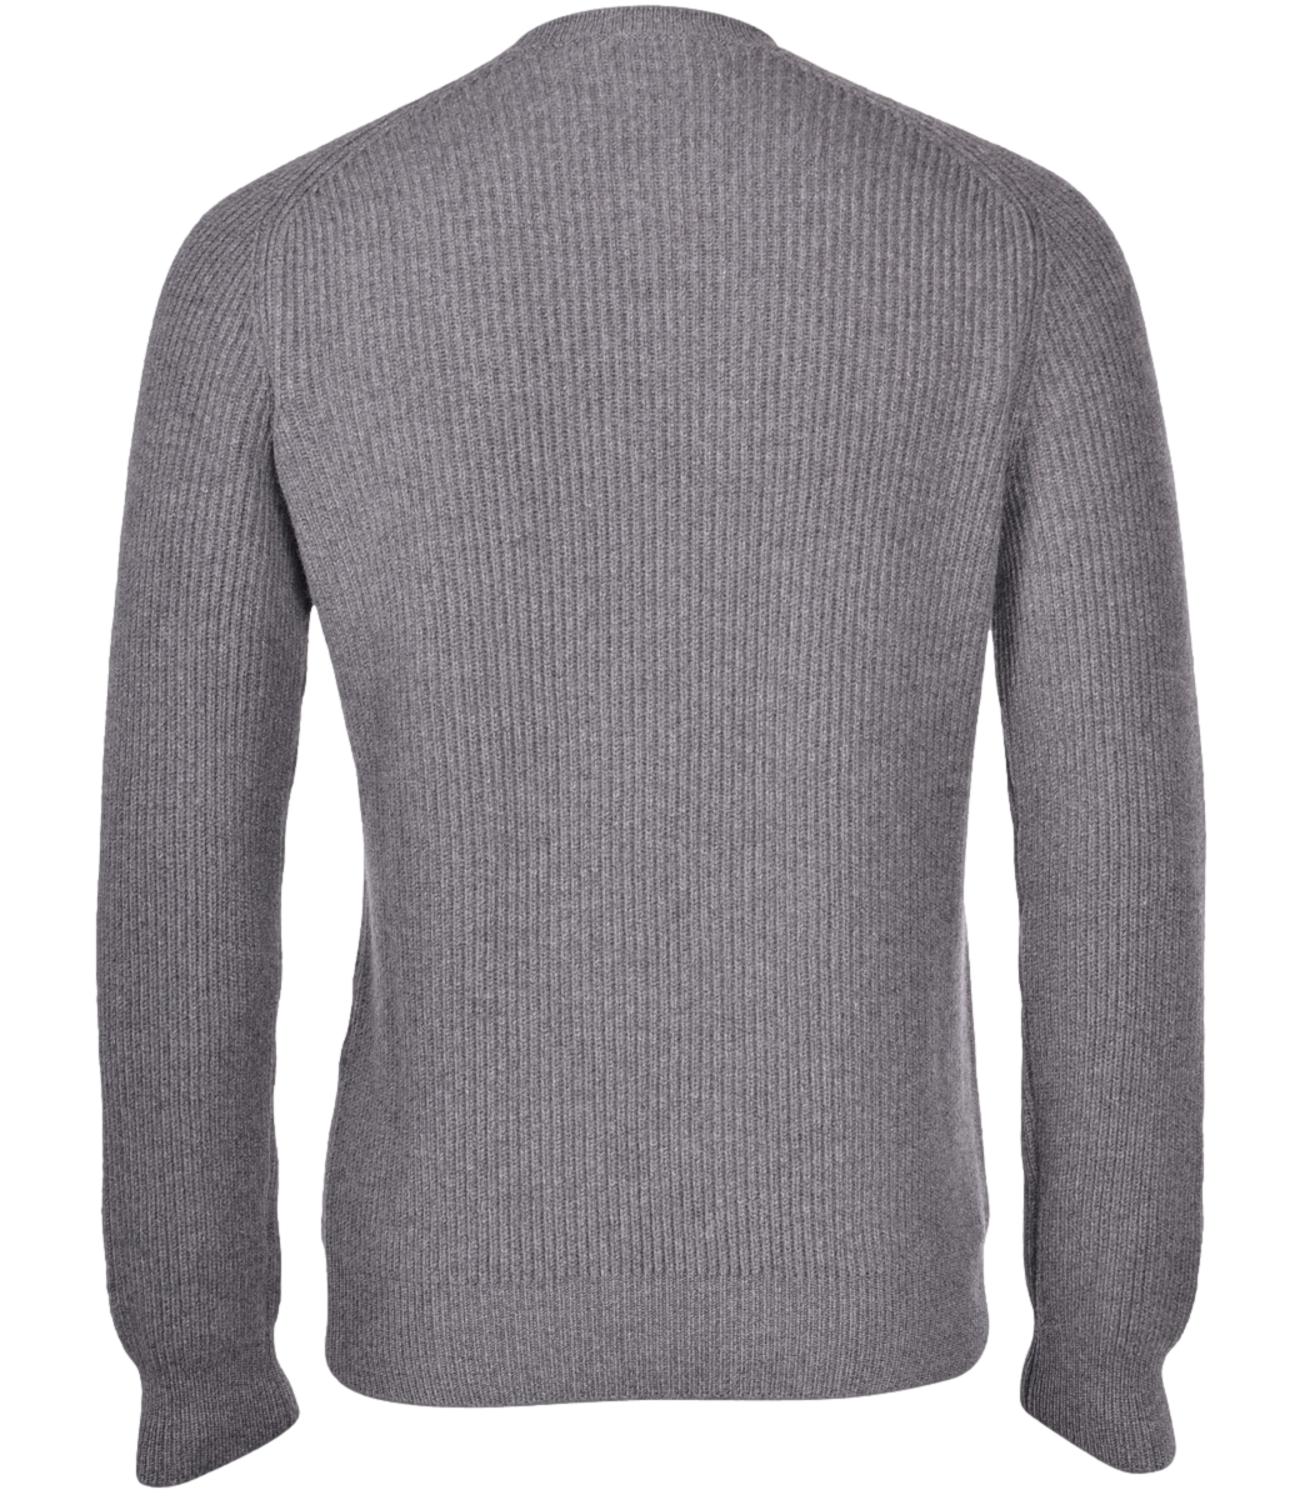 Gran Sasso Pullover in lana a coste uomo grigio tenue